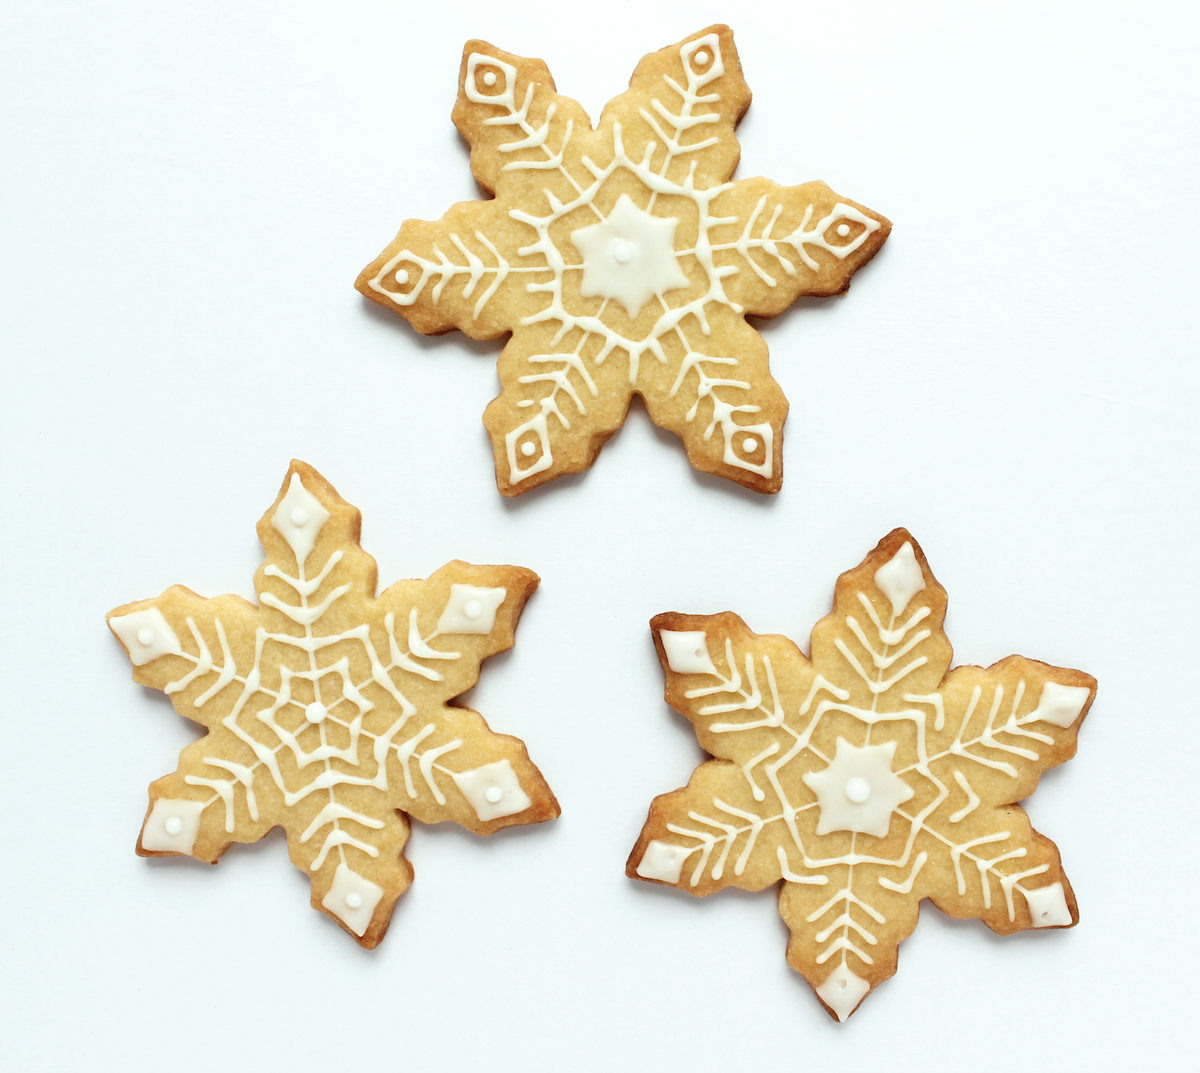 Cookies decorating via @kingarthurflour